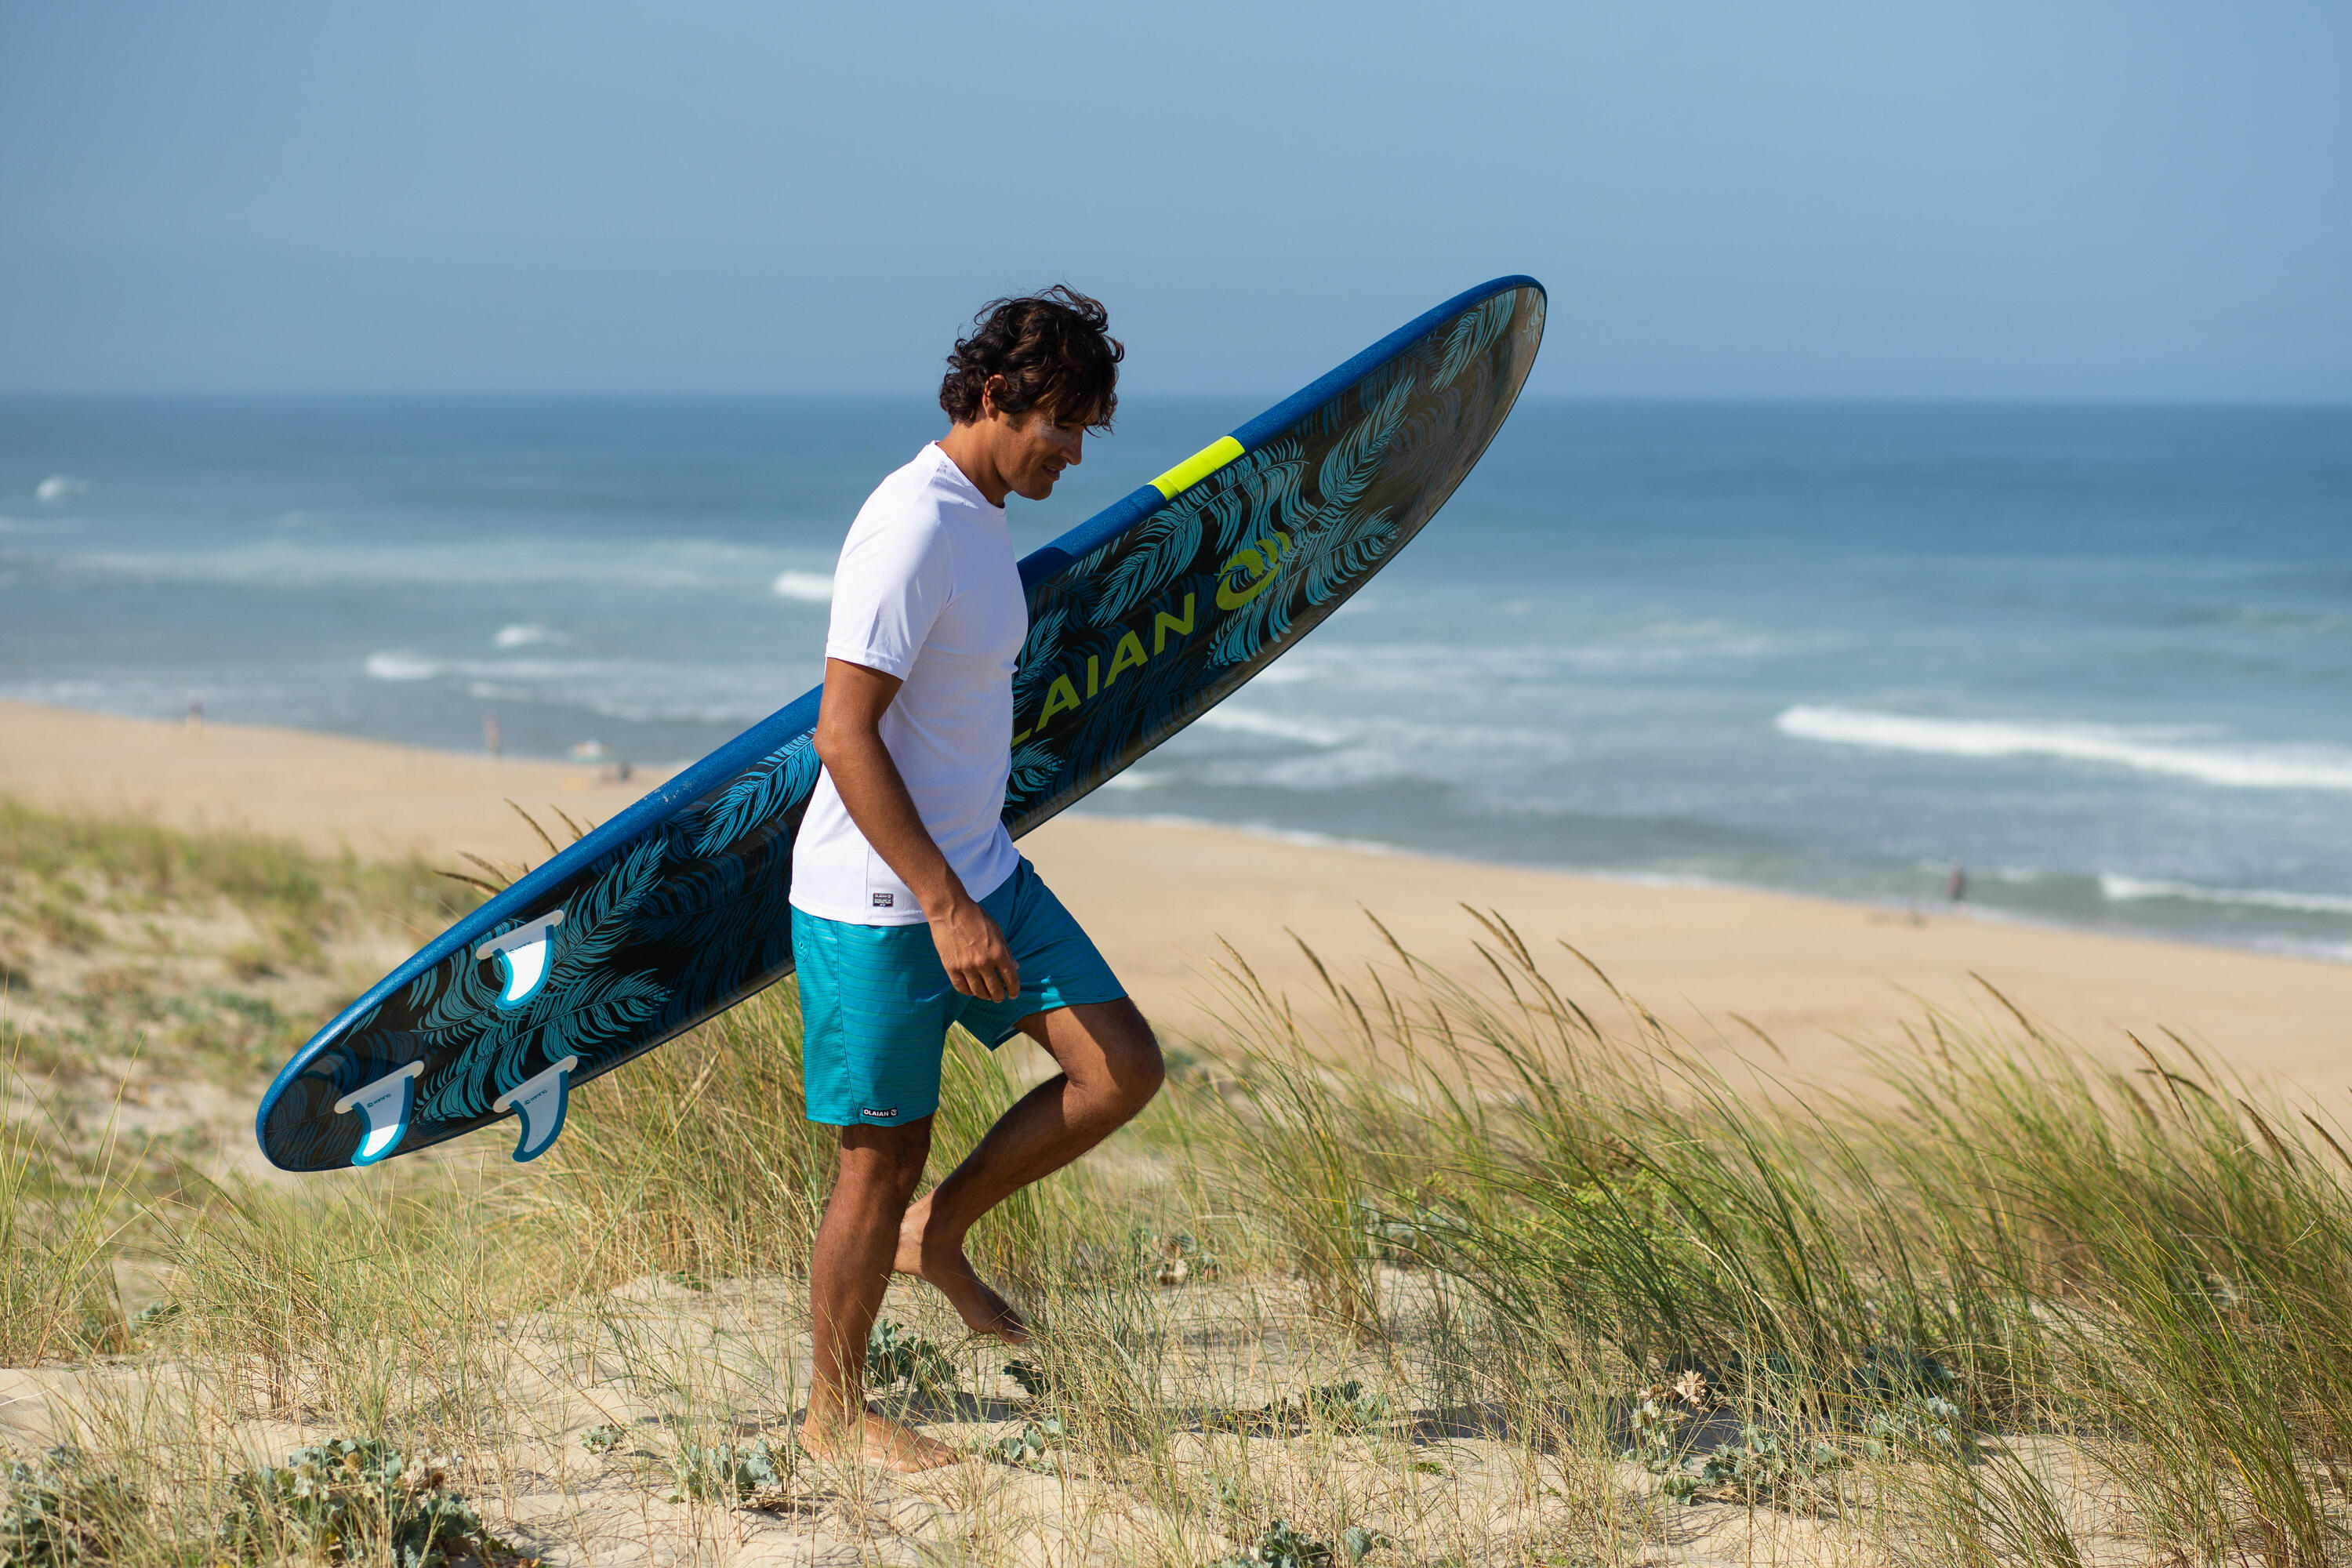 100 Standard Surfing Boardshorts - Newwaves Turquoise 7/8